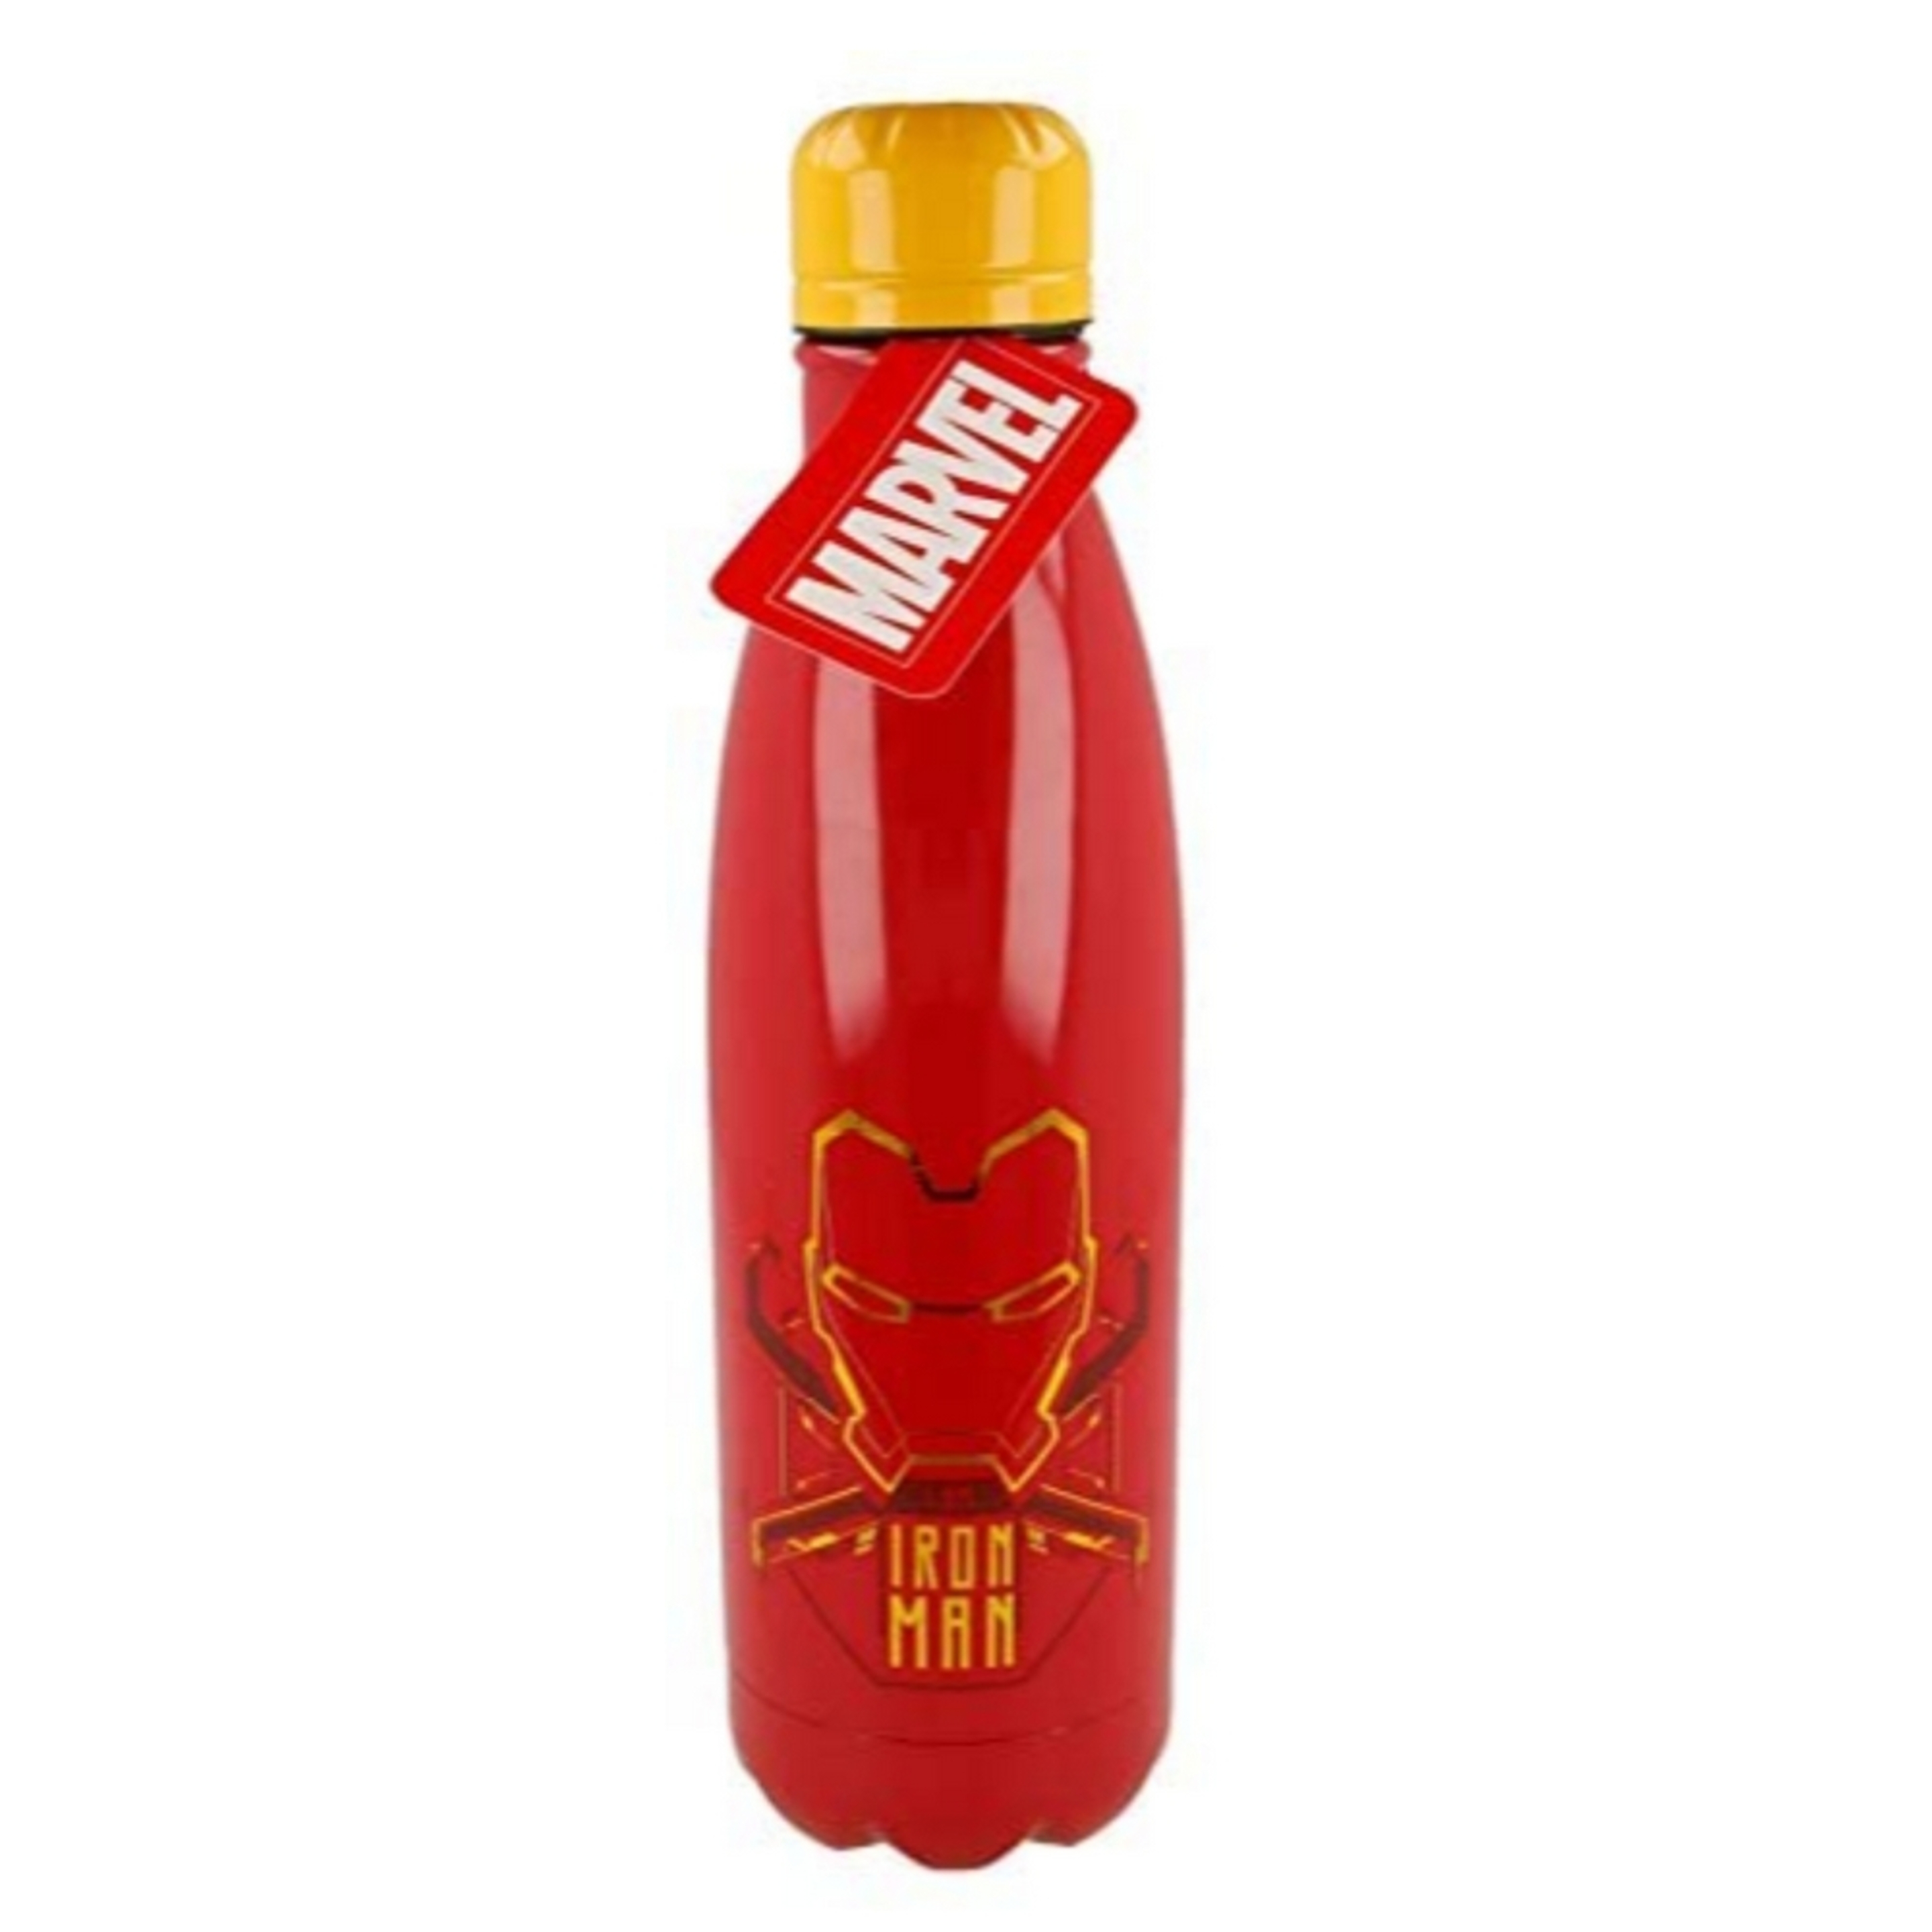 Botella Ironman 69189  MKP